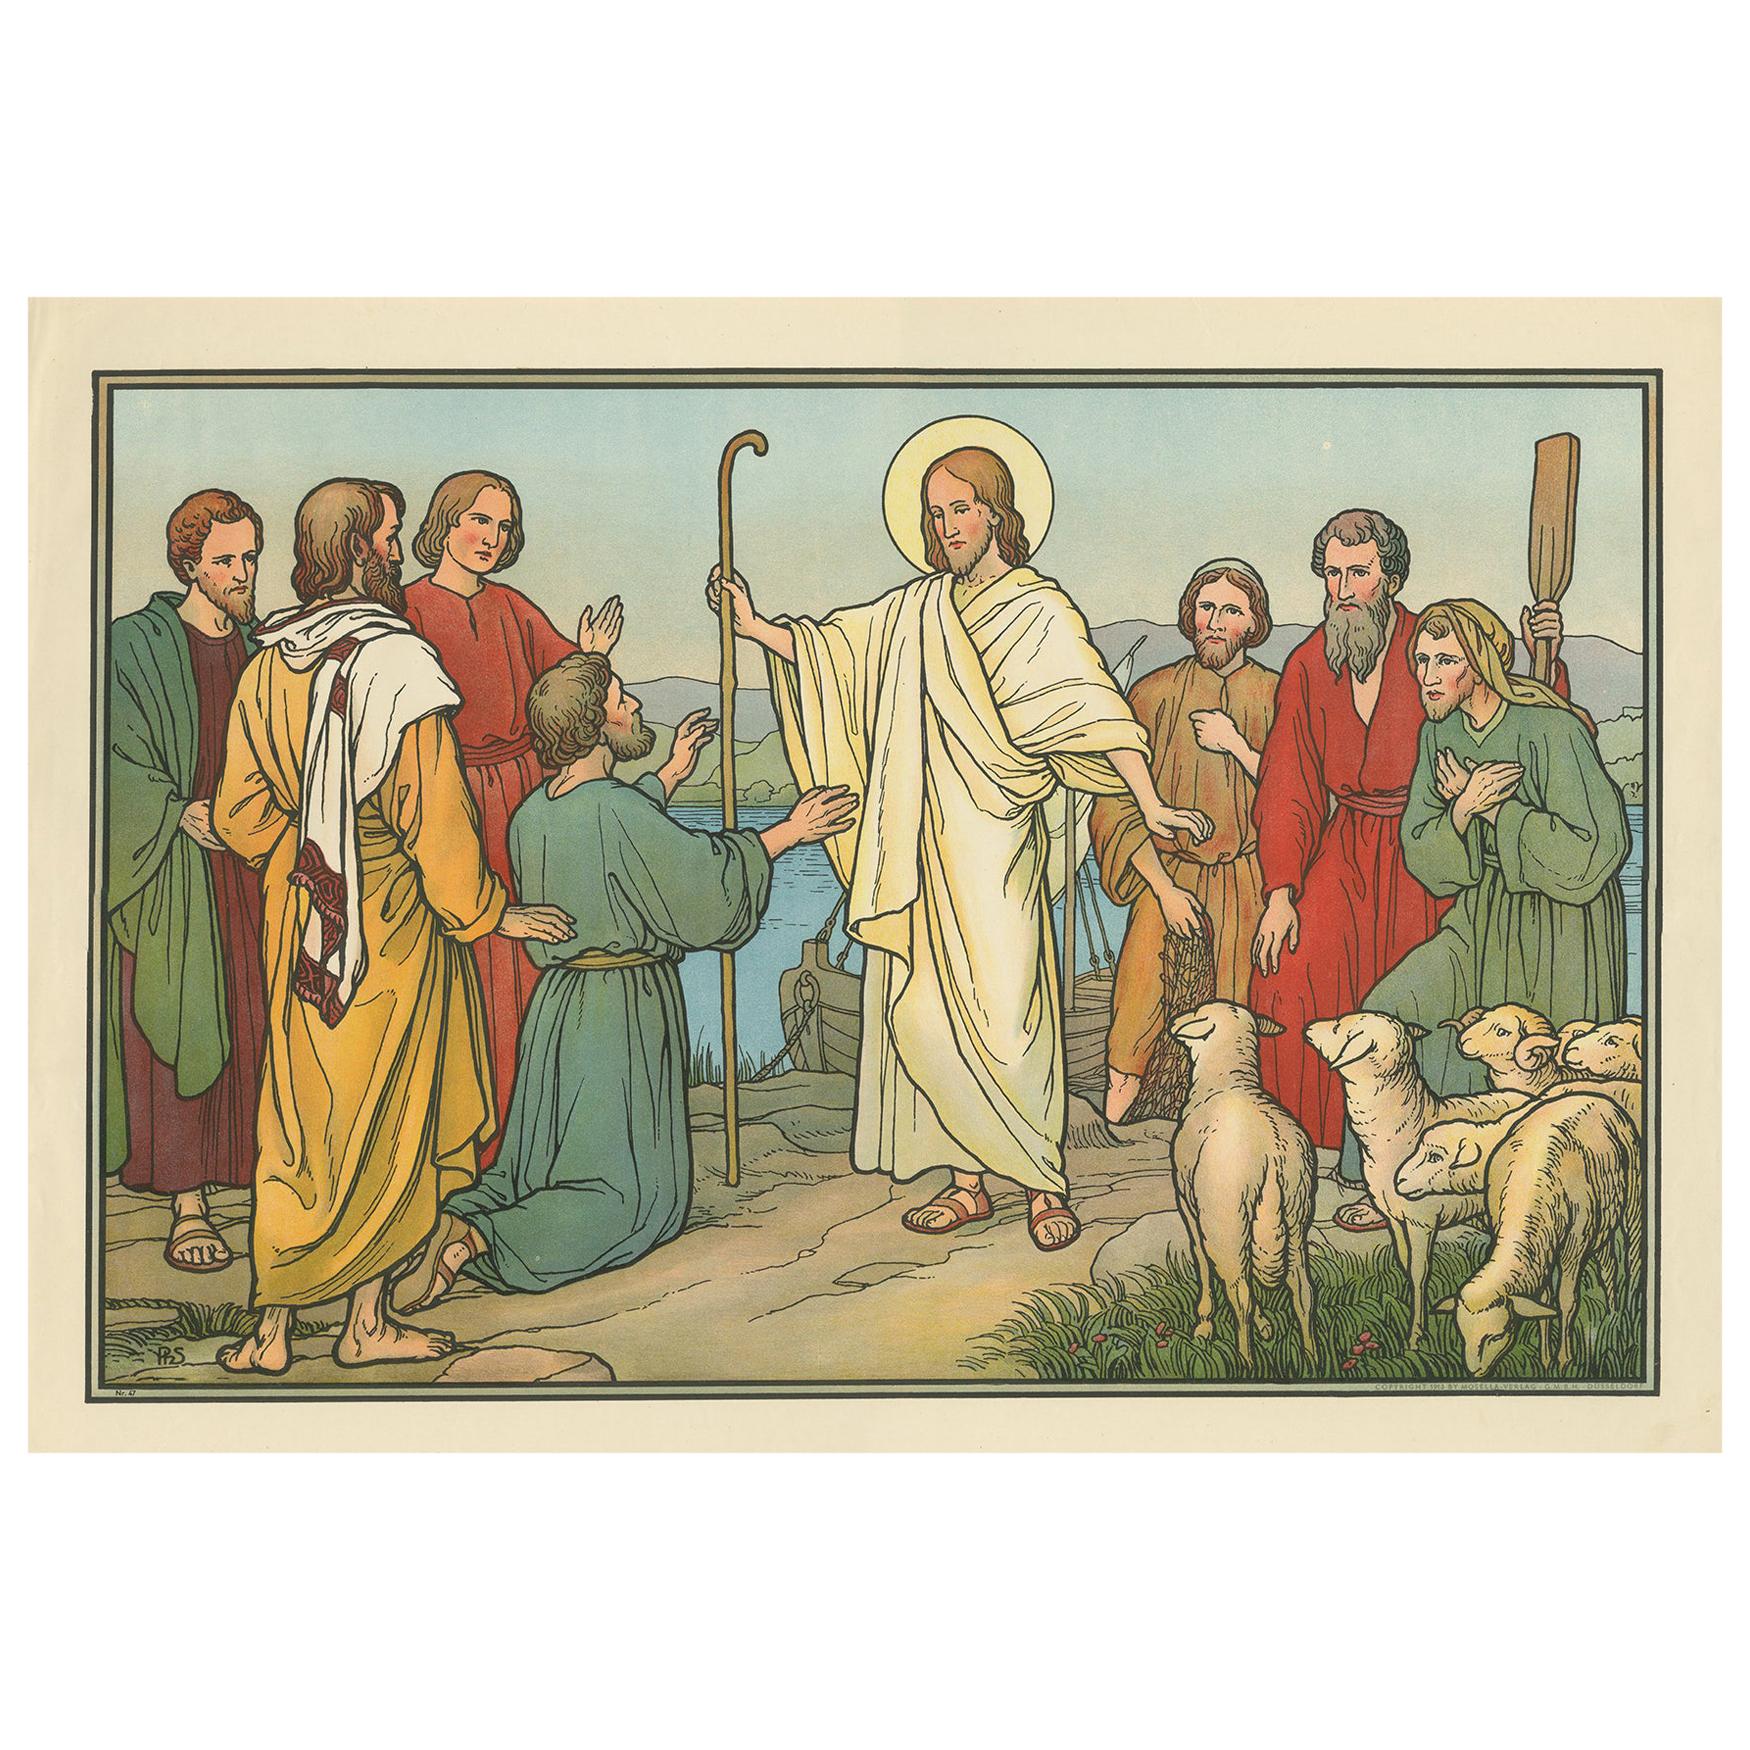 Impression religieuse ancienne de l'apparence de Jésus (1913)